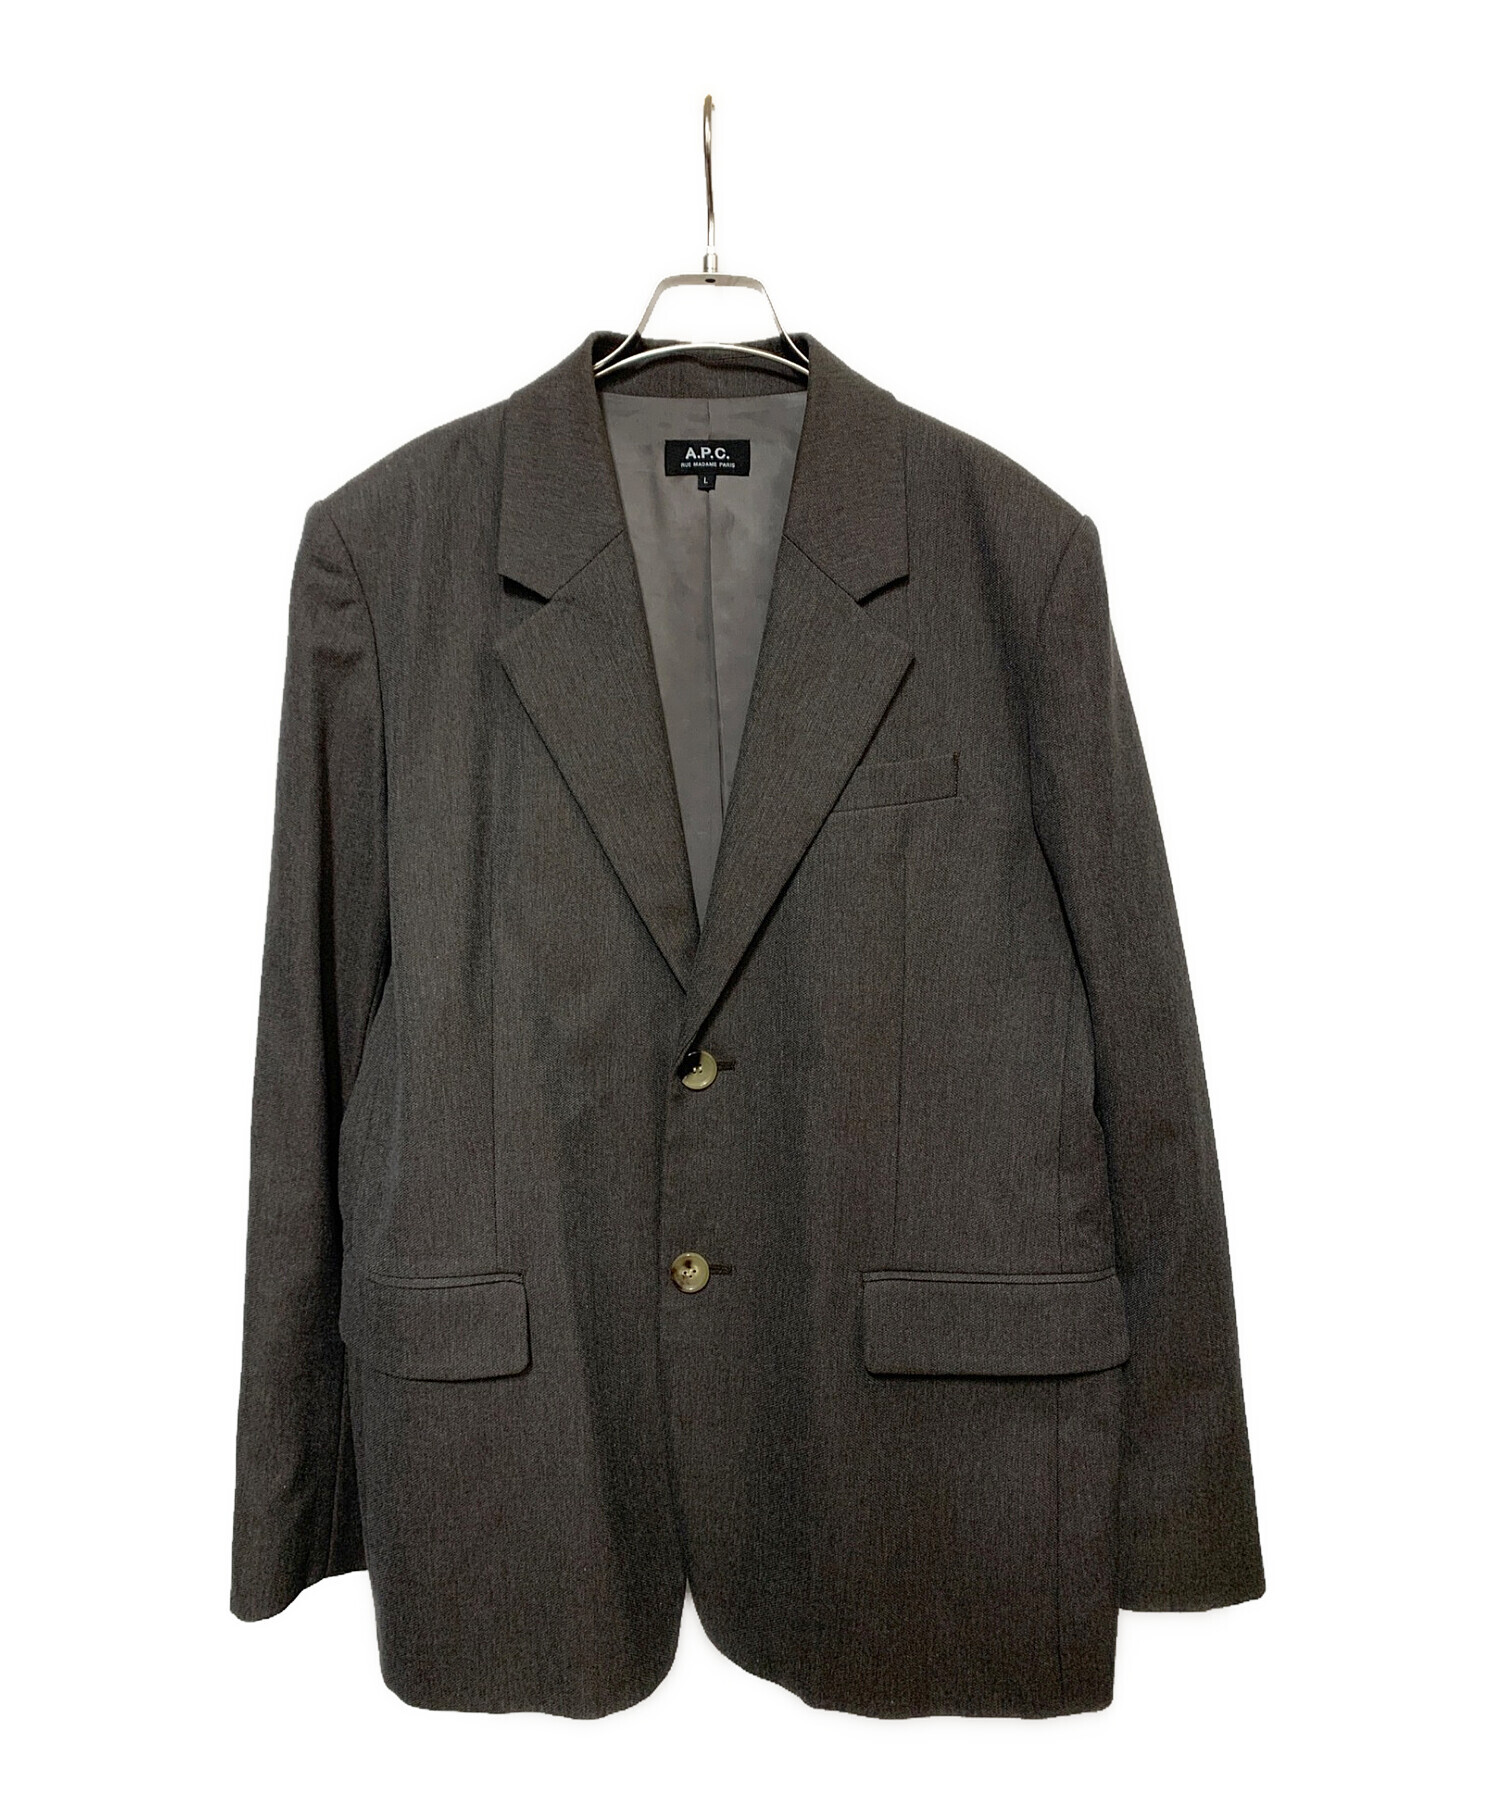 A.P.C スーツ セットアップ チェック サイズS - スーツ